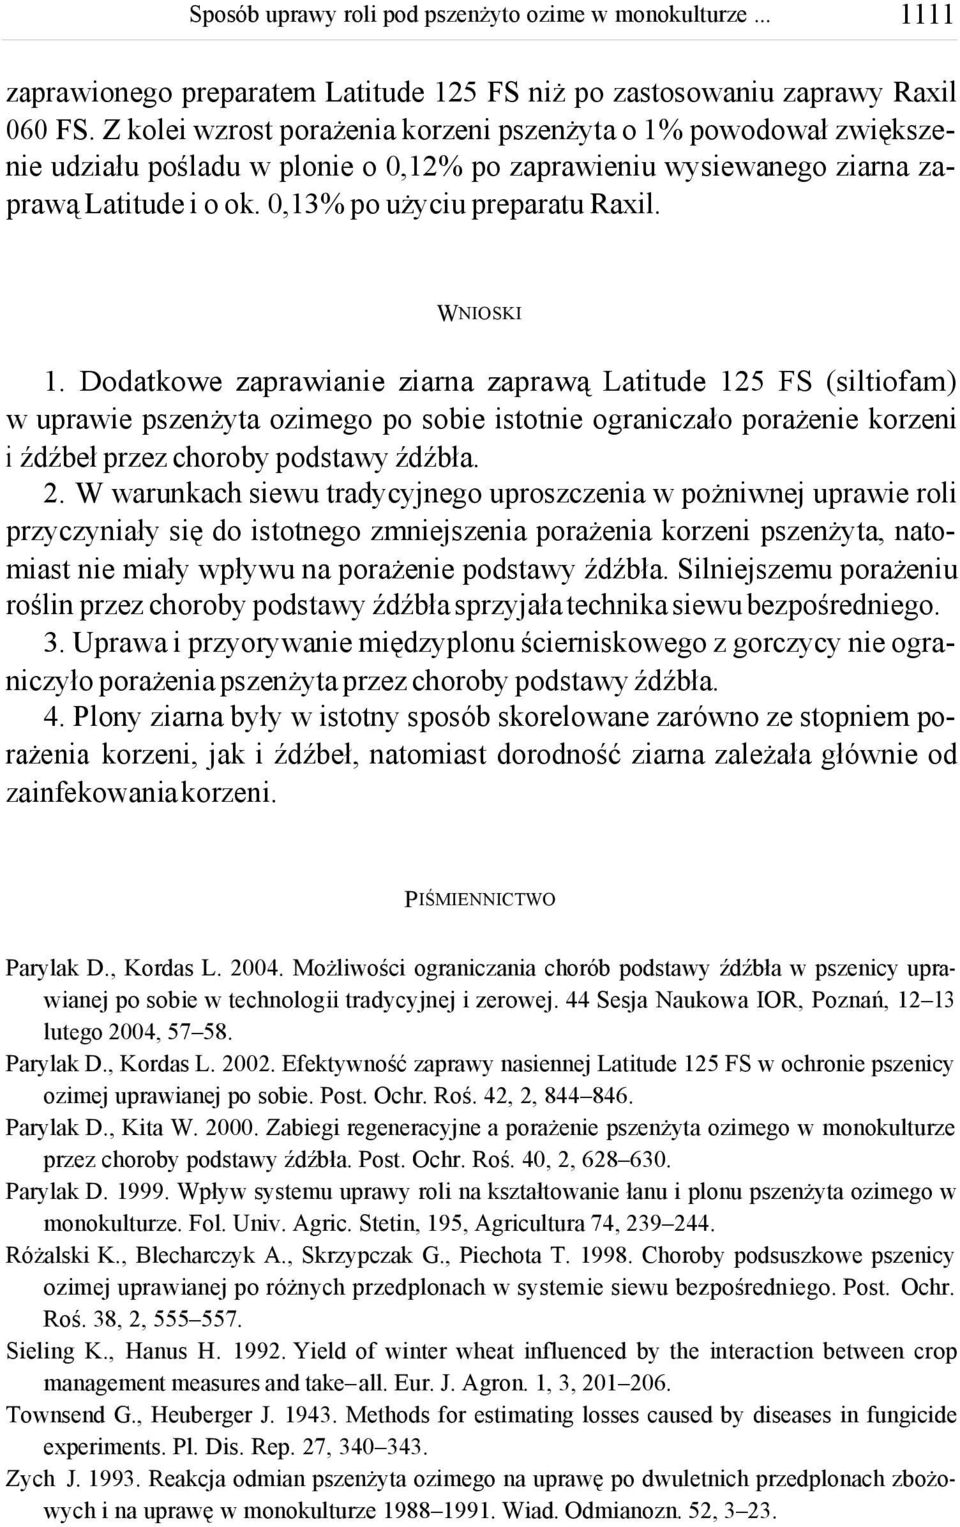 Dodatkowe zaprawianie ziarna zaprawą Latitude 15 FS (siltiofam) w uprawie pszenżyta ozimego po sobie istotnie ograniczało porażenie korzeni i źdźbeł przez choroby podstawy źdźbła.